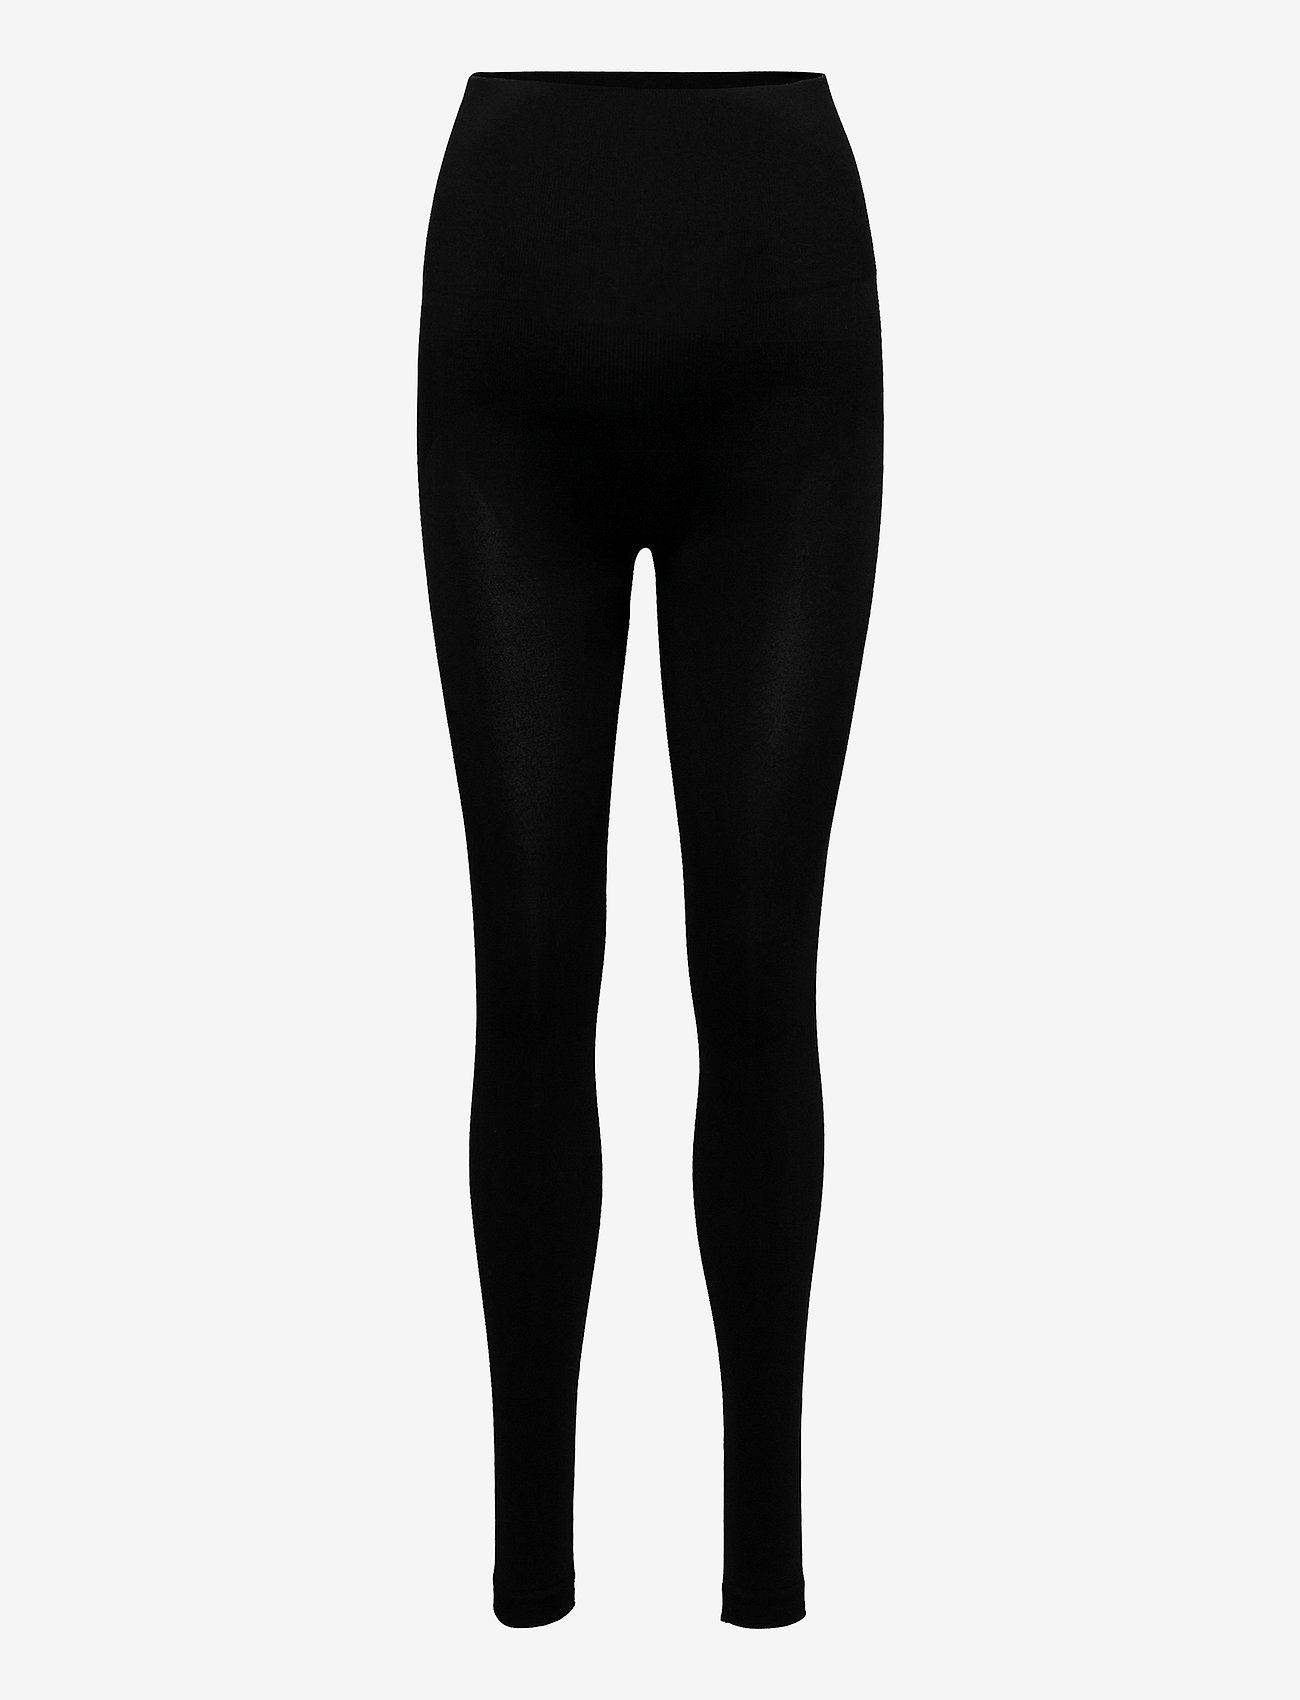 Boob - Support leggings - legingi - black - 0